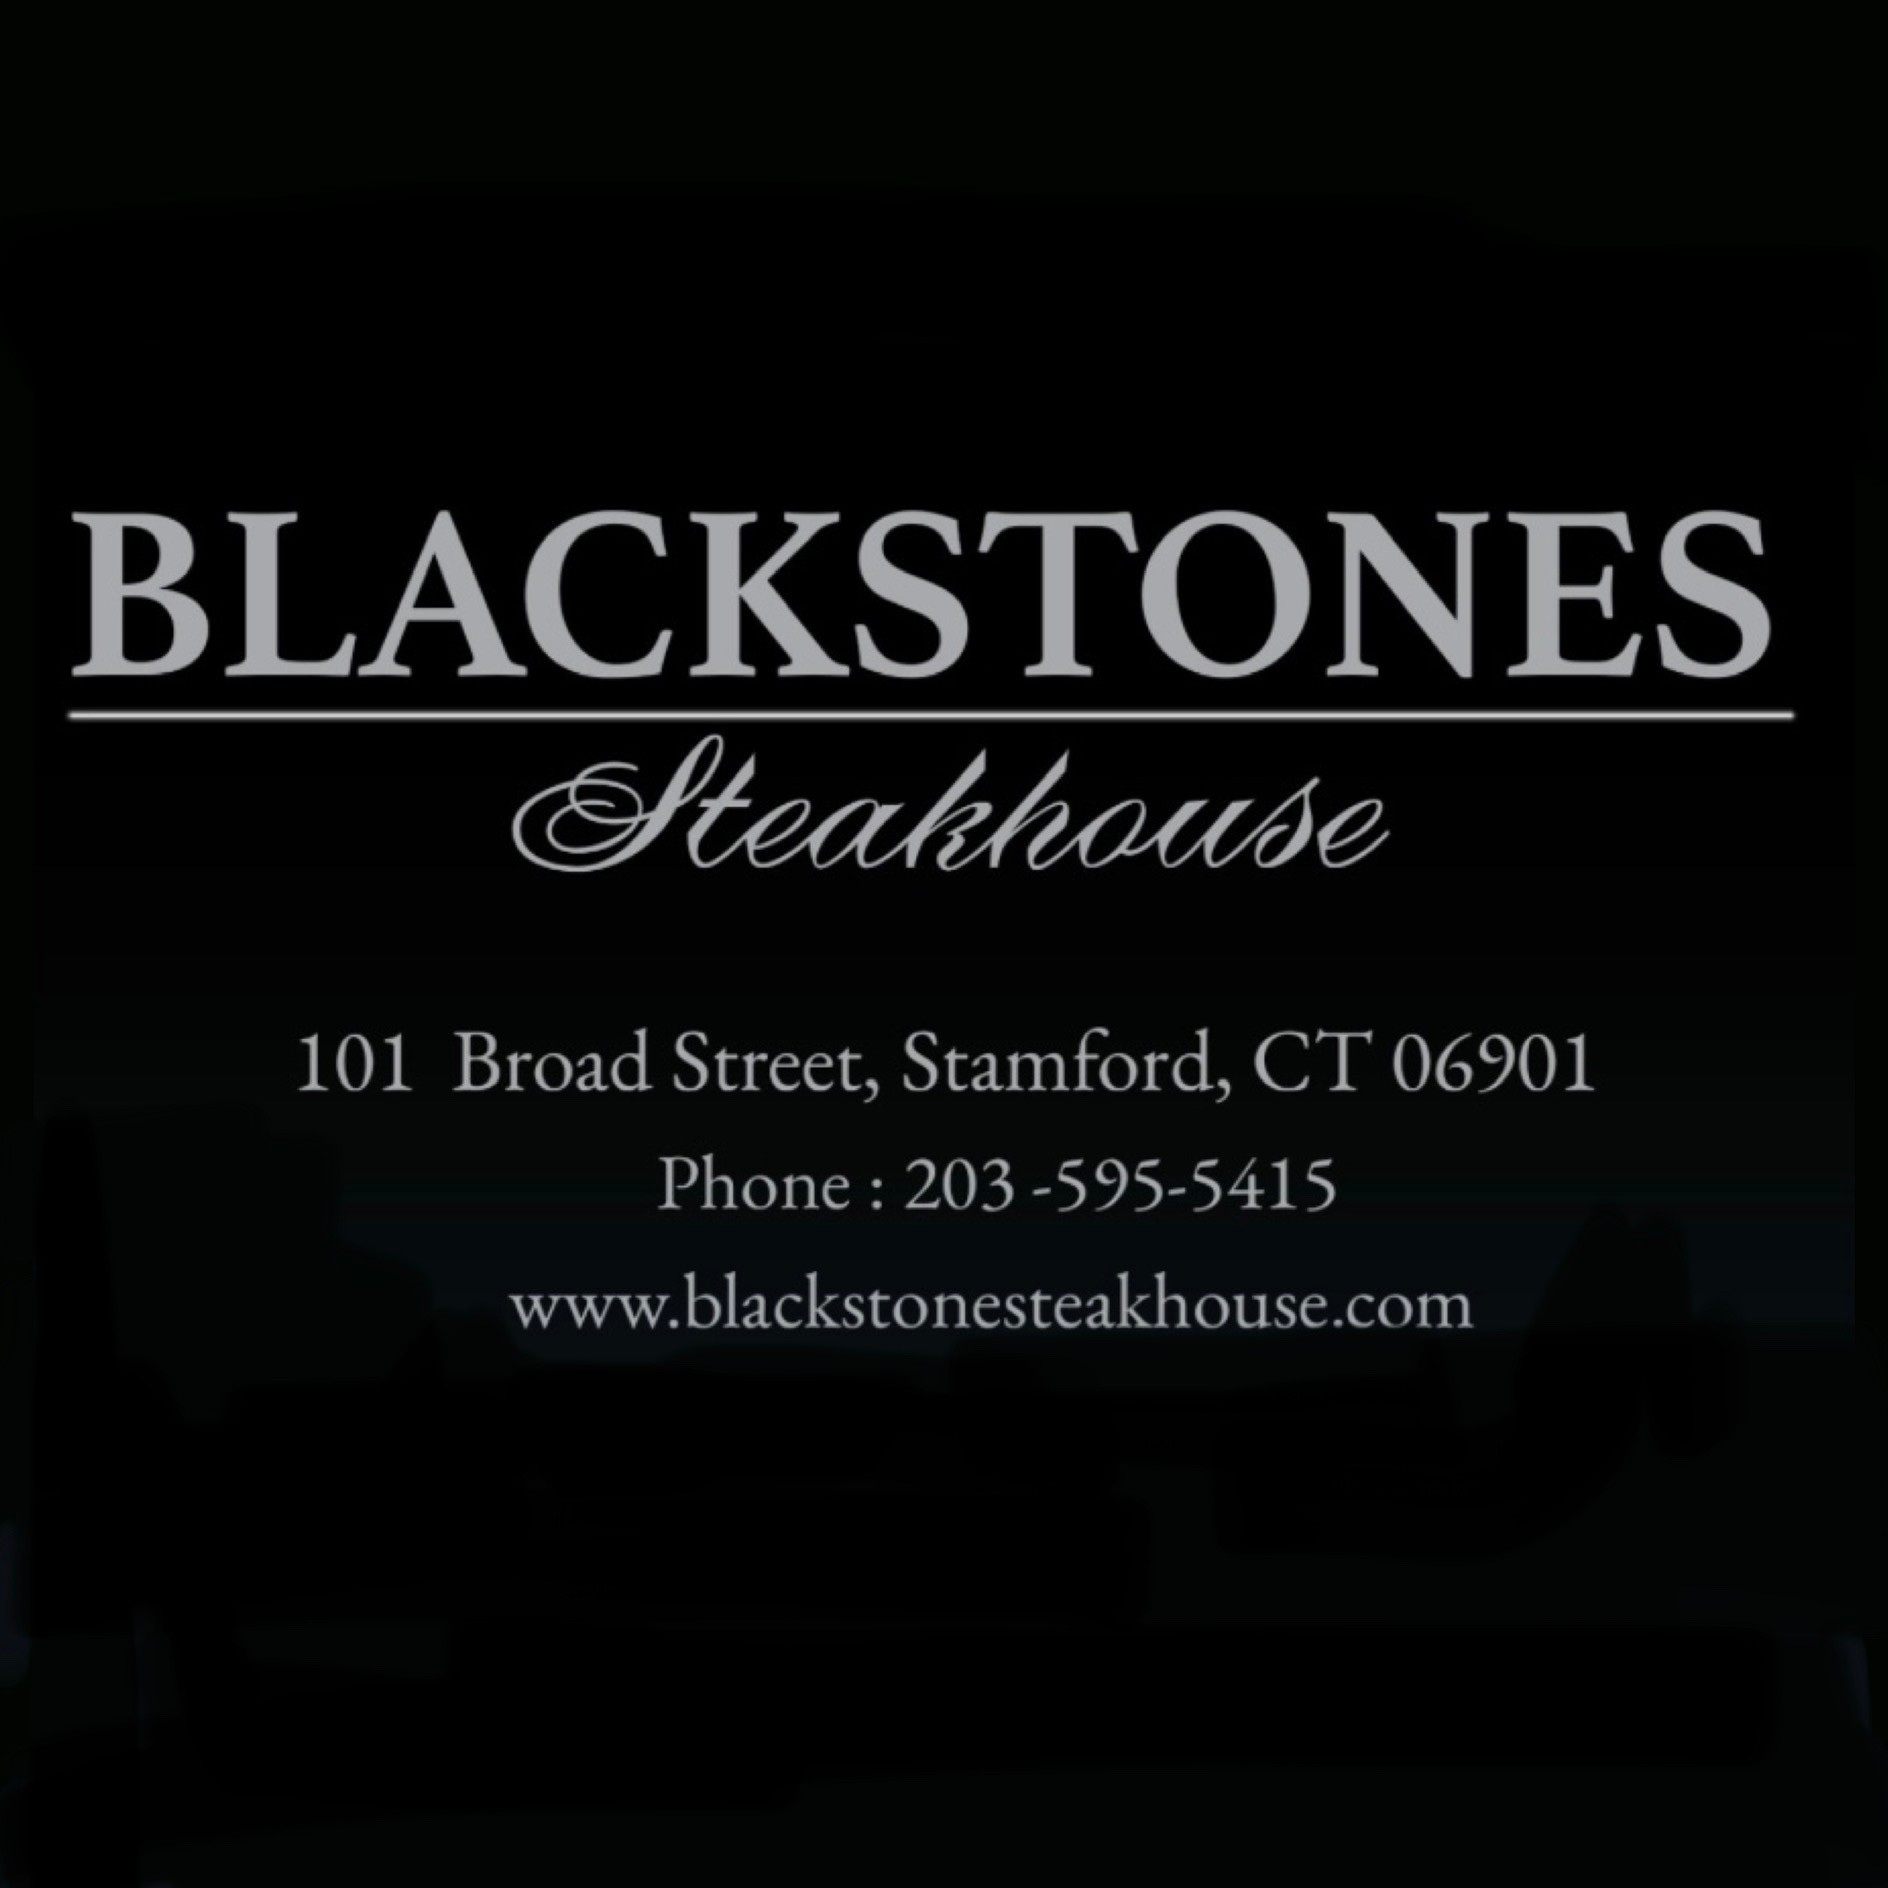 Blackstones Steakhouse 101 Broad St